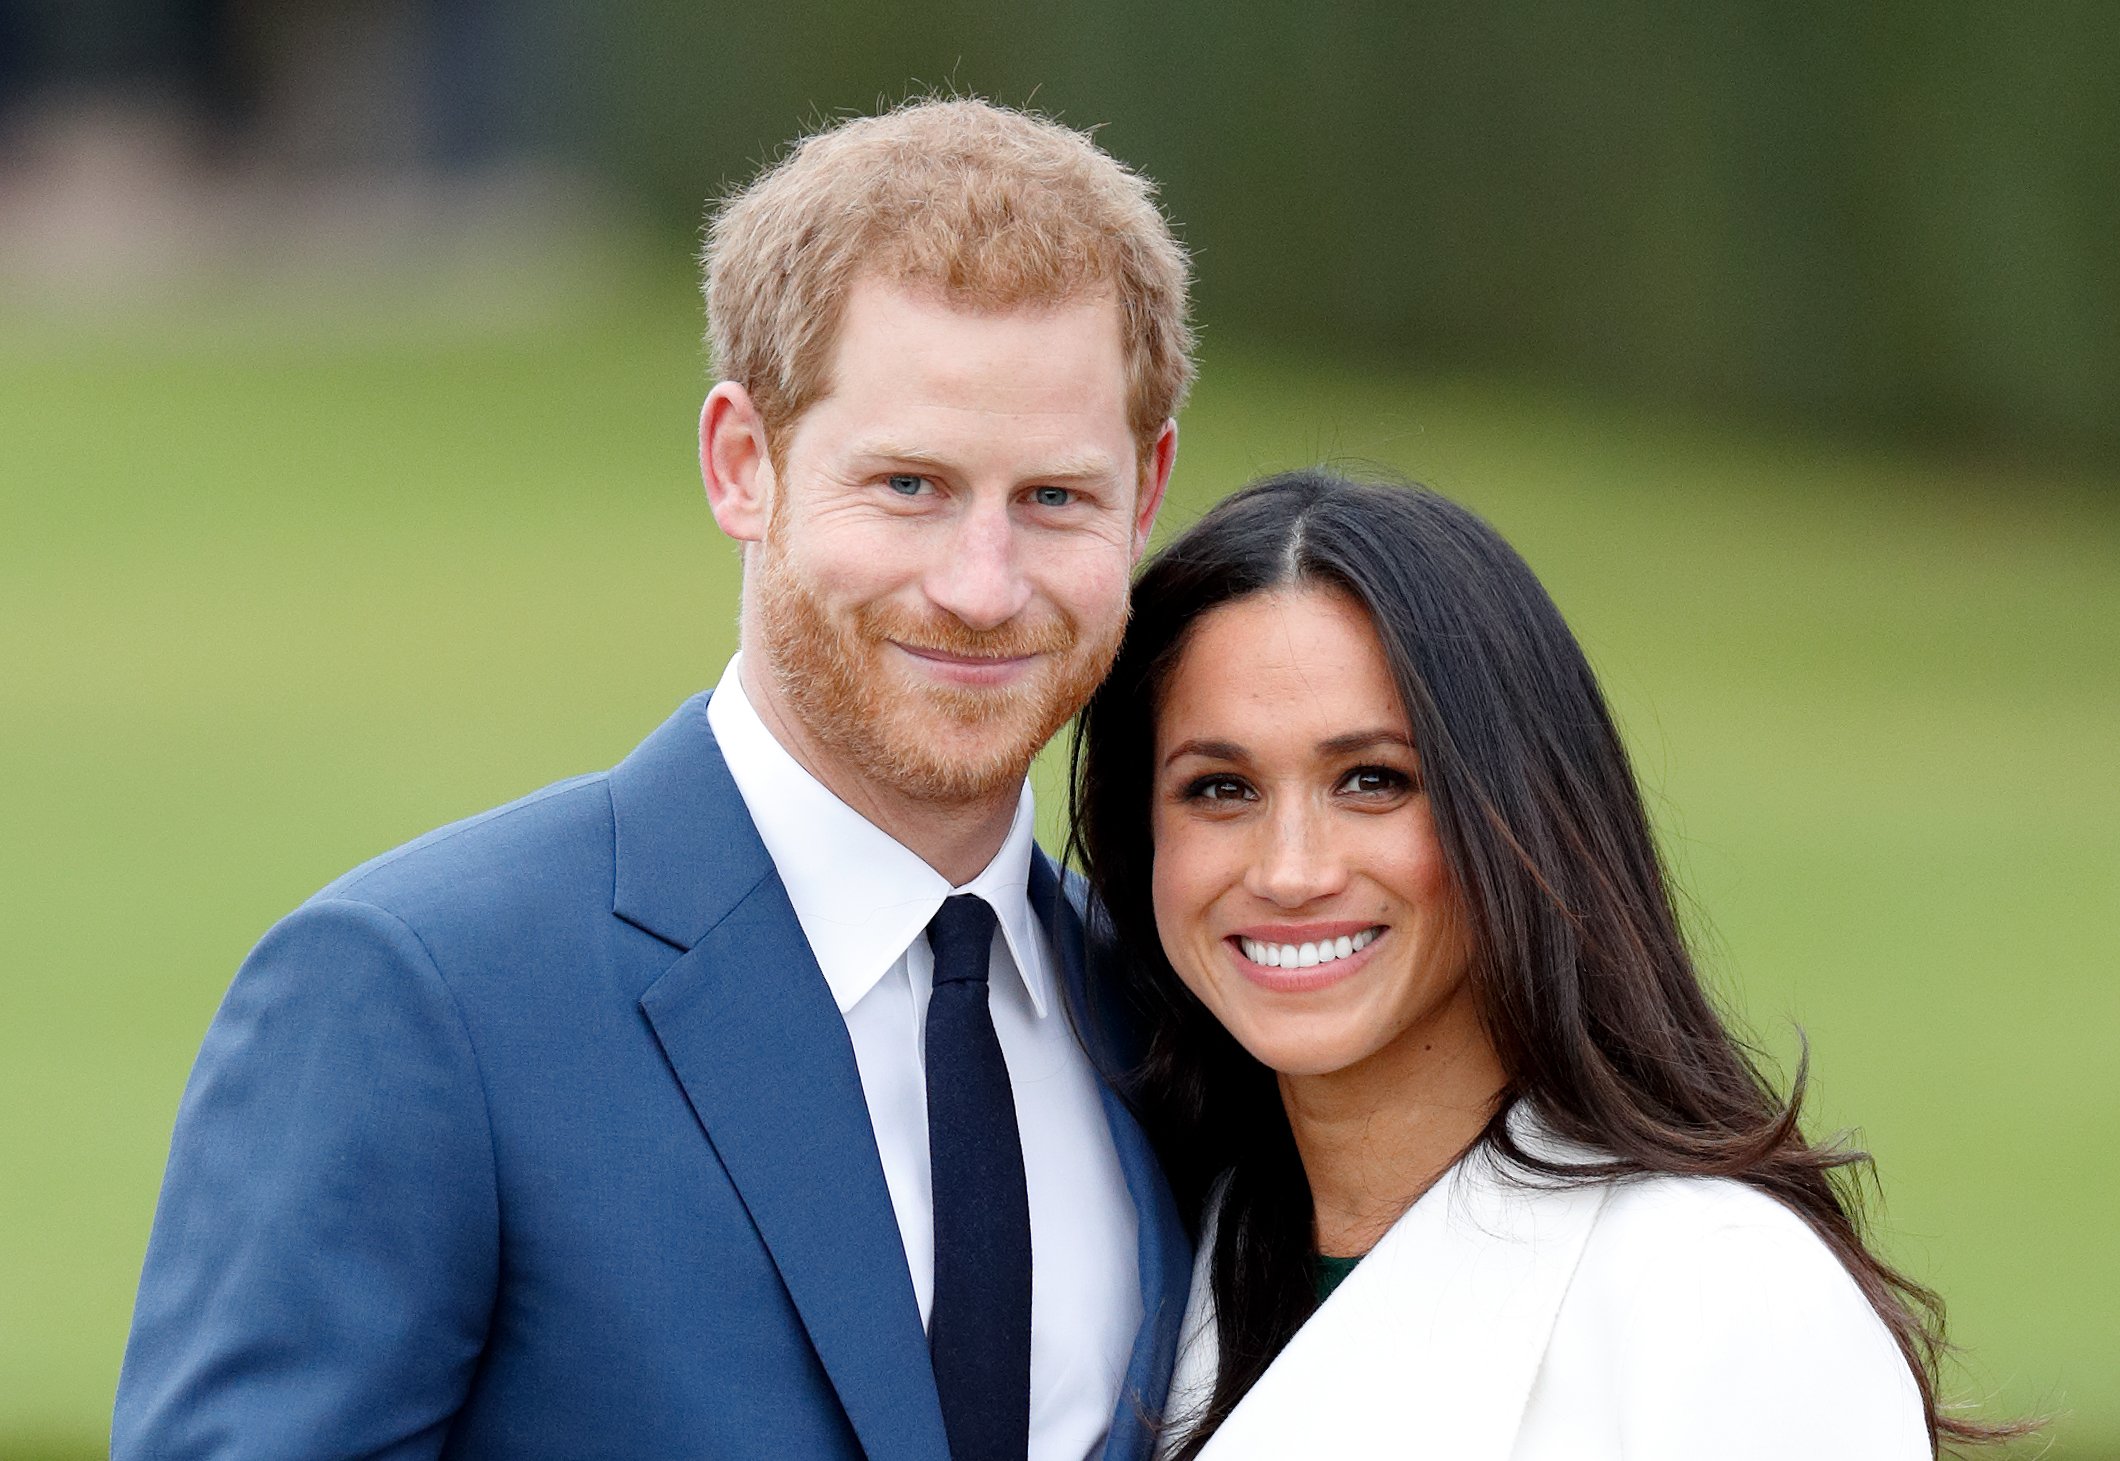 Prinz Harry und Meghan Markle nehmen an einem offiziellen Fototermin teil, um ihre Verlobung in den Sunken Gardens im Kensington Palace am 27. November 2017 in London, England, bekannt zu geben | Quelle: Getty Images